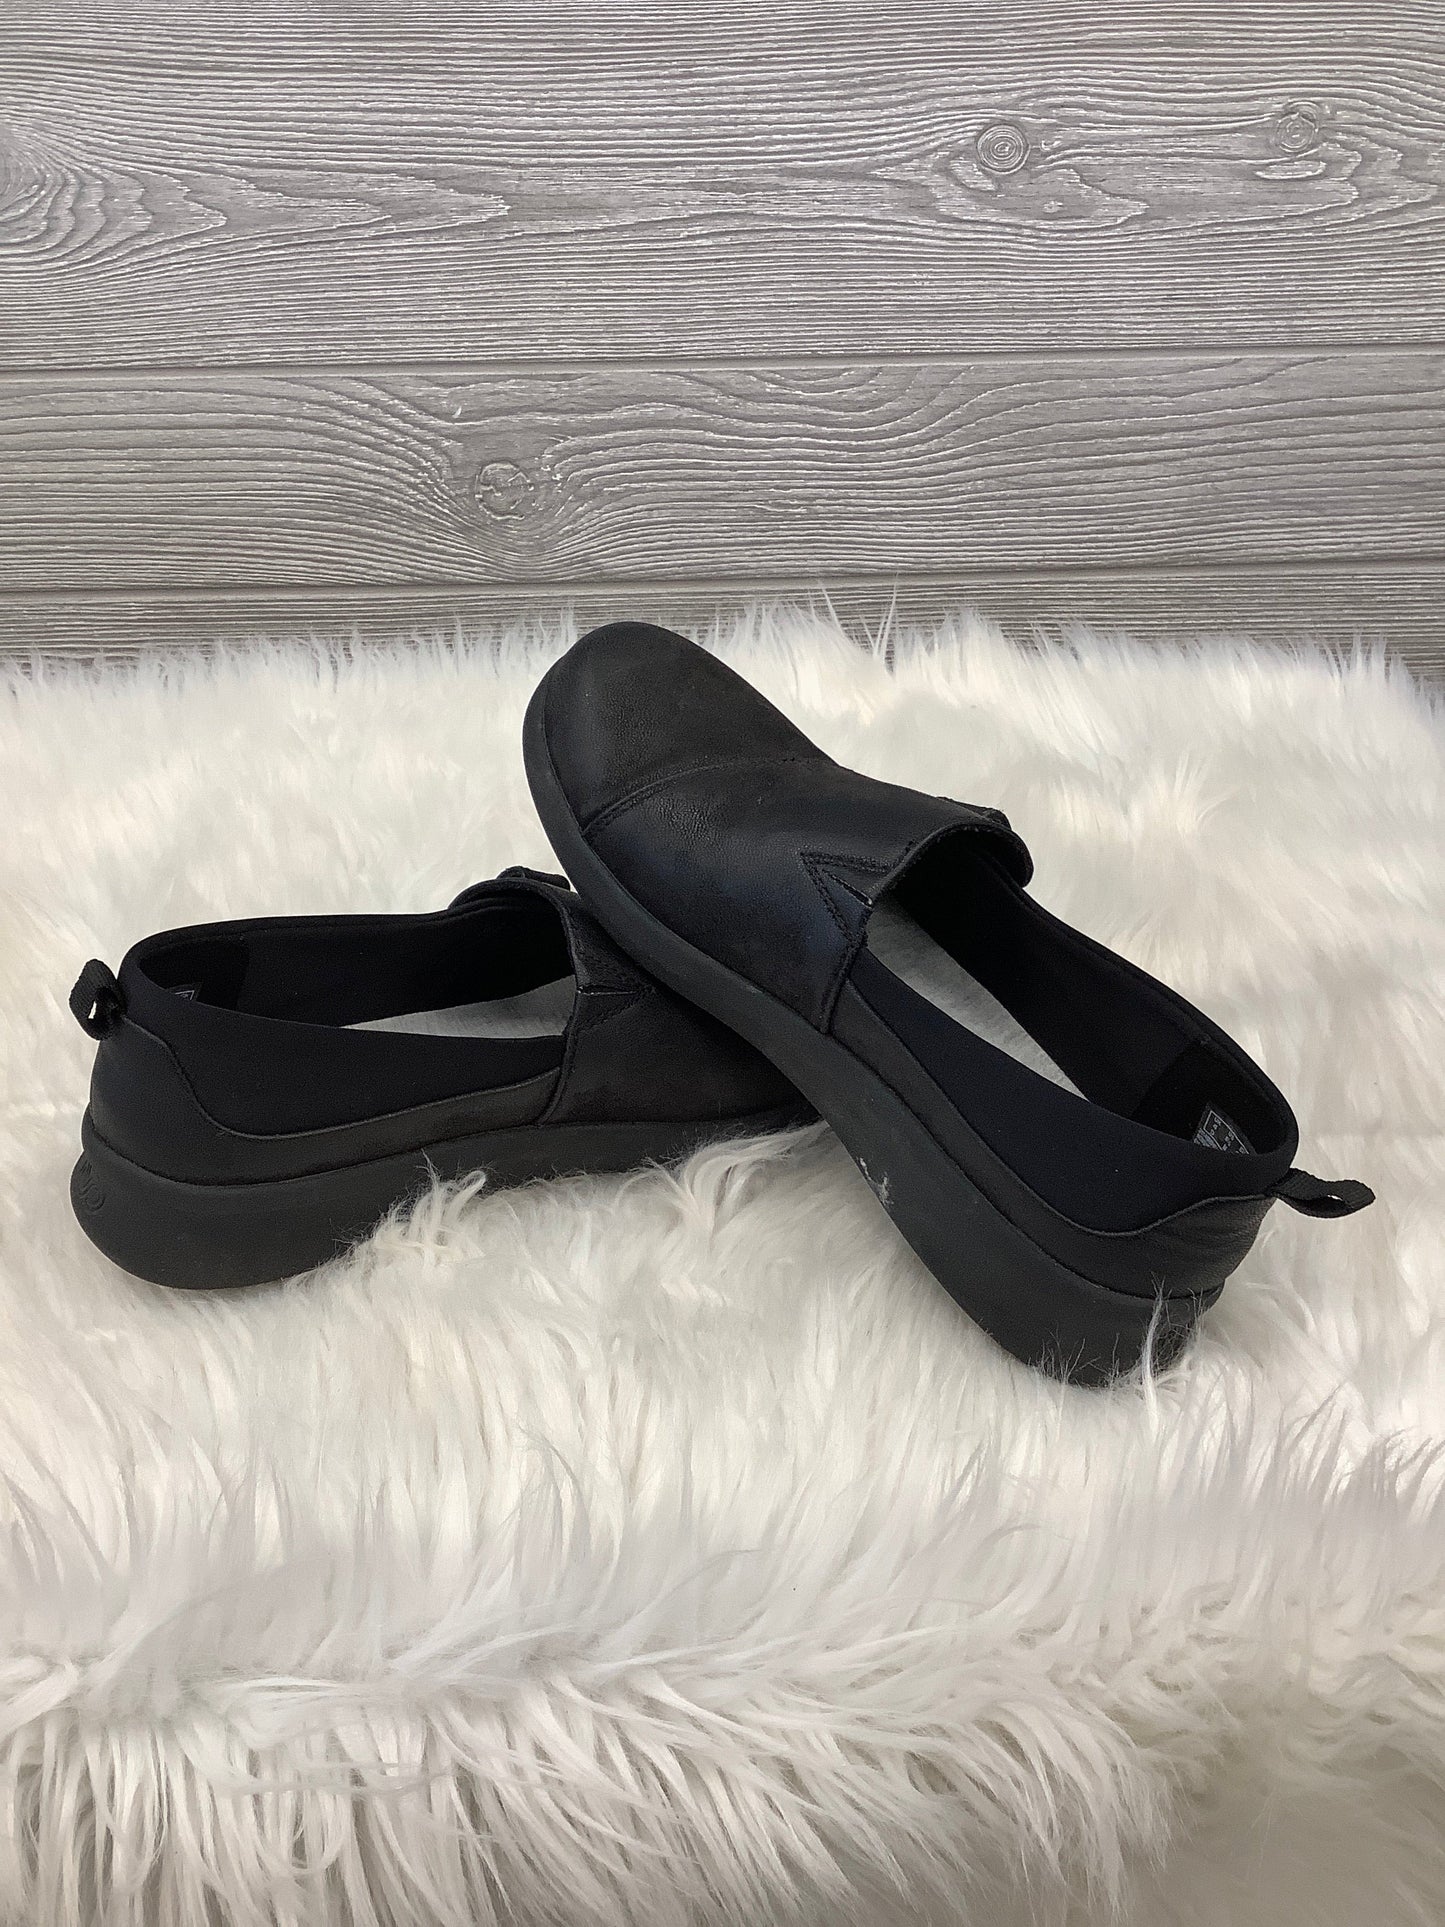 Black Shoes Flats Clarks, Size 8.5